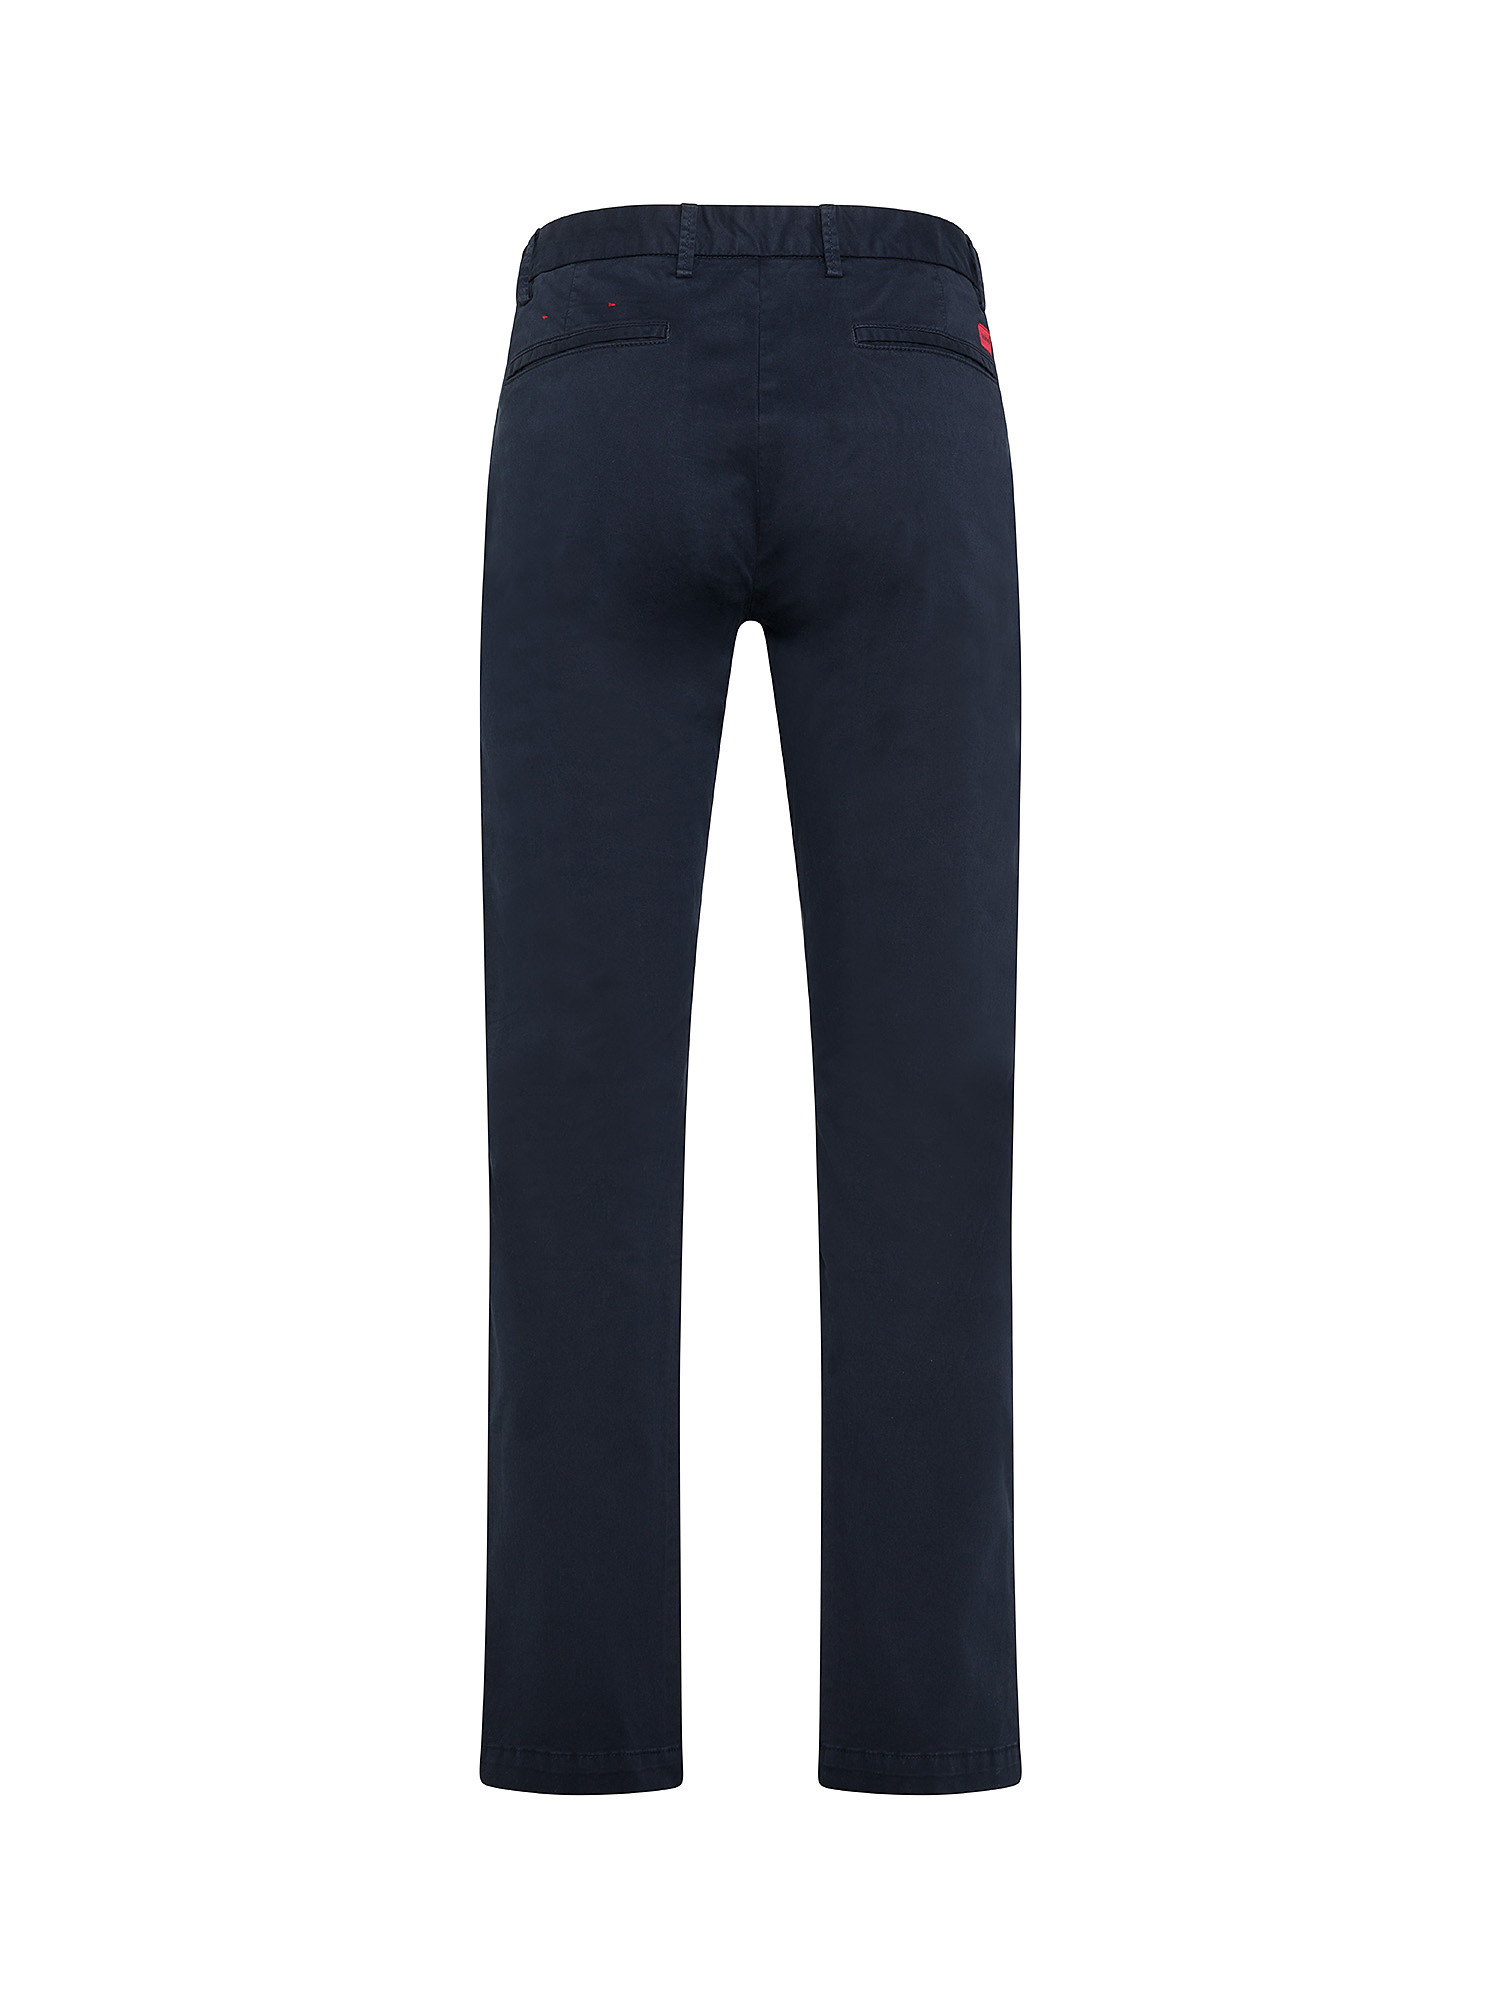 Hugo - Pantaloni chino slim fit, Blu scuro, large image number 1